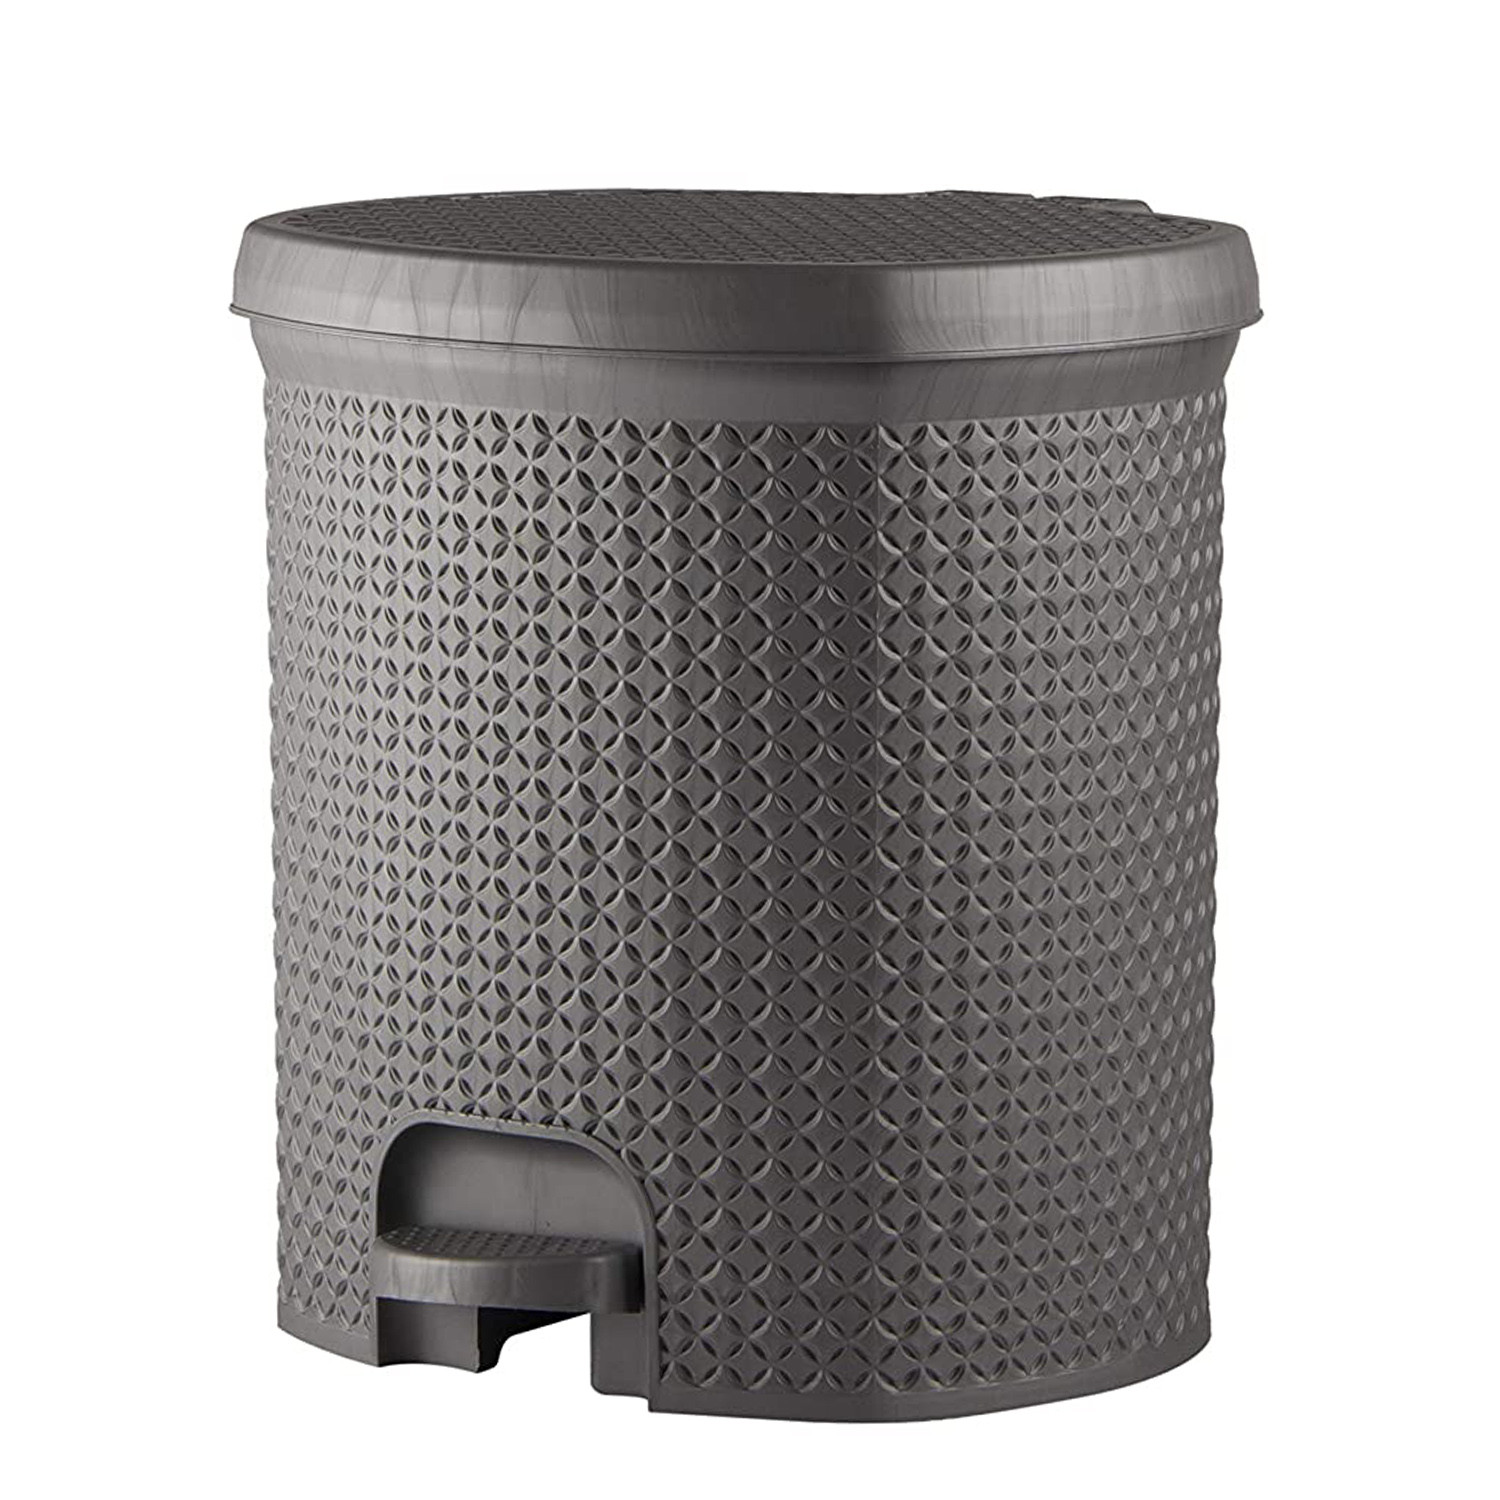 Kuber Industries Dustbin|Plastic Pedal Dustbin|Kitchen Inner Bucket Waste Paper Bin|Dustbin For Bedroom|Dustbin For office|12 Litre Dustbin (Grey)